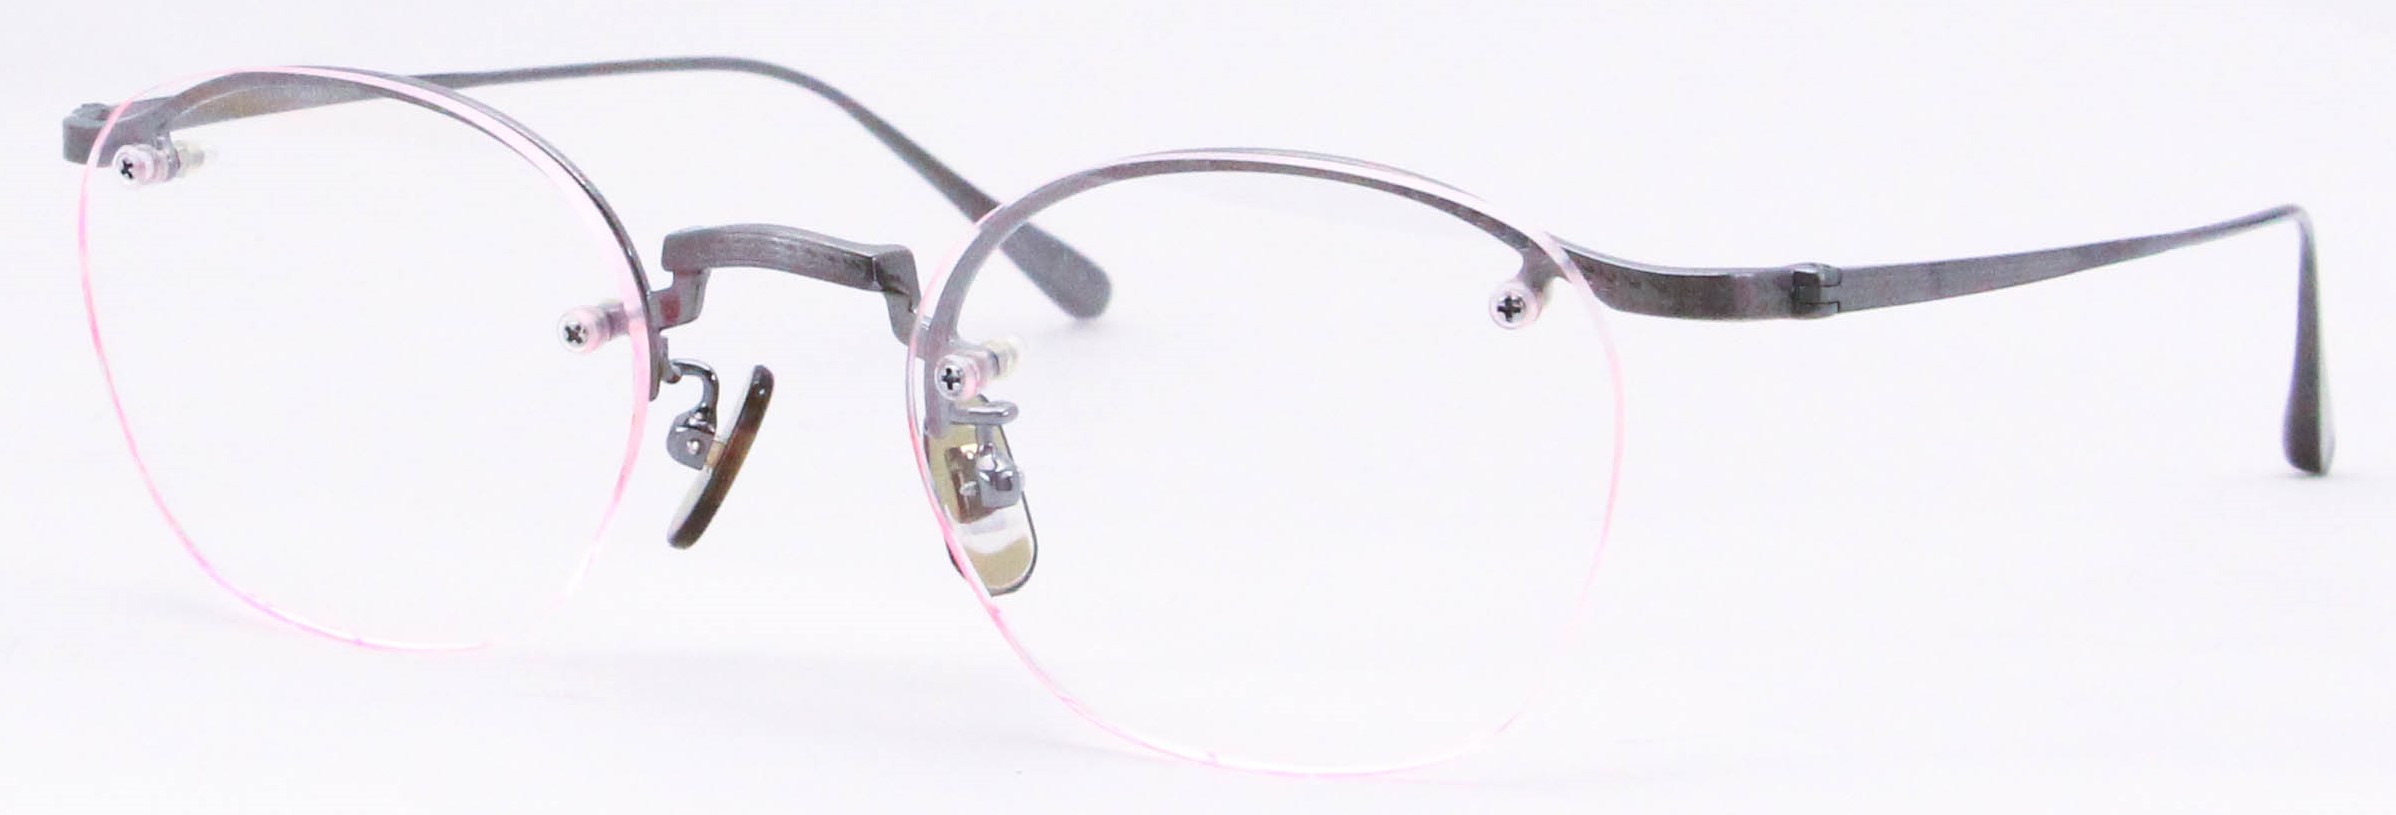 眼鏡のカラータイプC-5 Gray